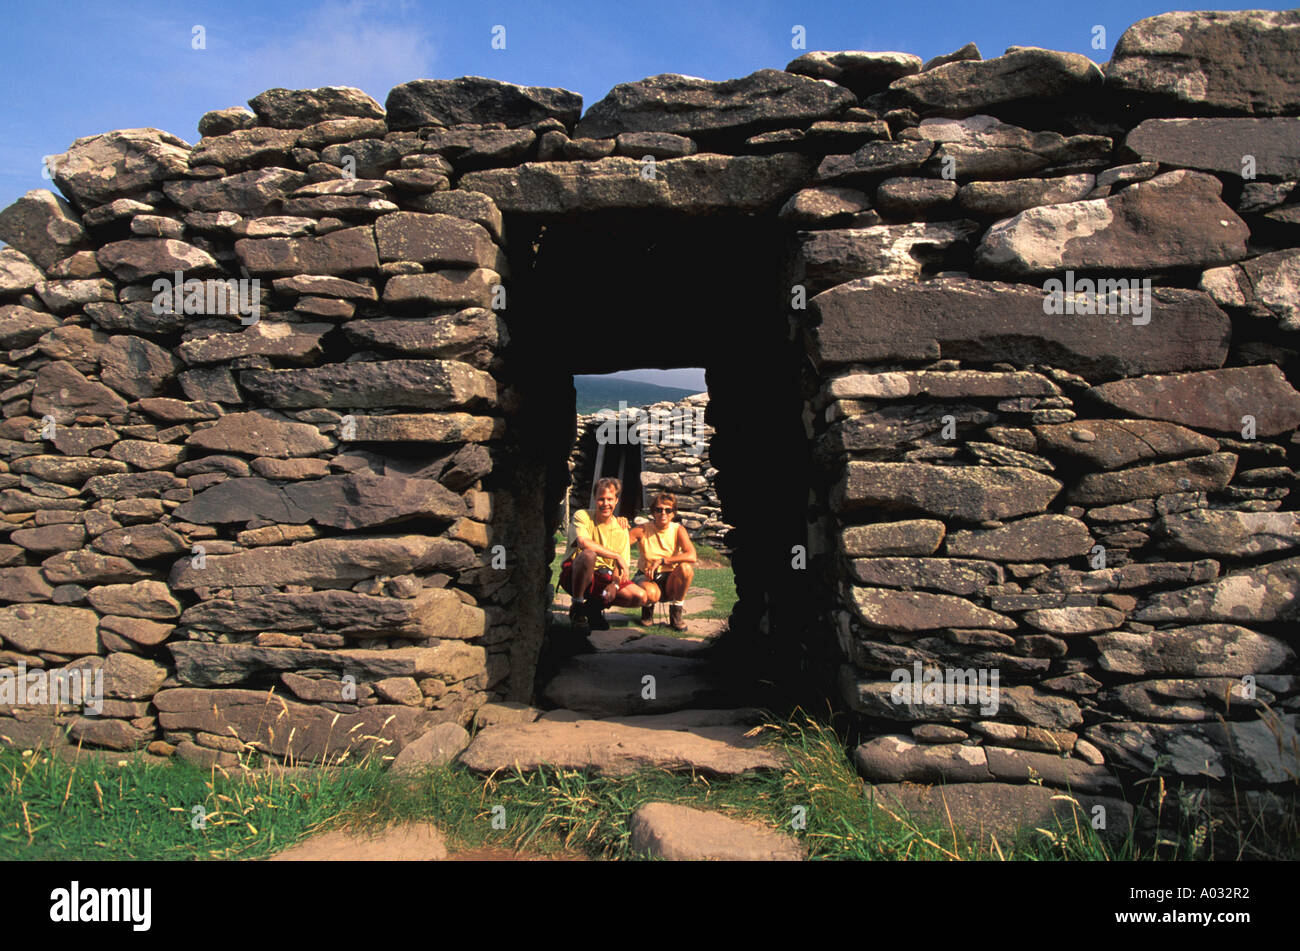 Dunbeg Fort on the Dingle Peninsula Ireland Stock Photo